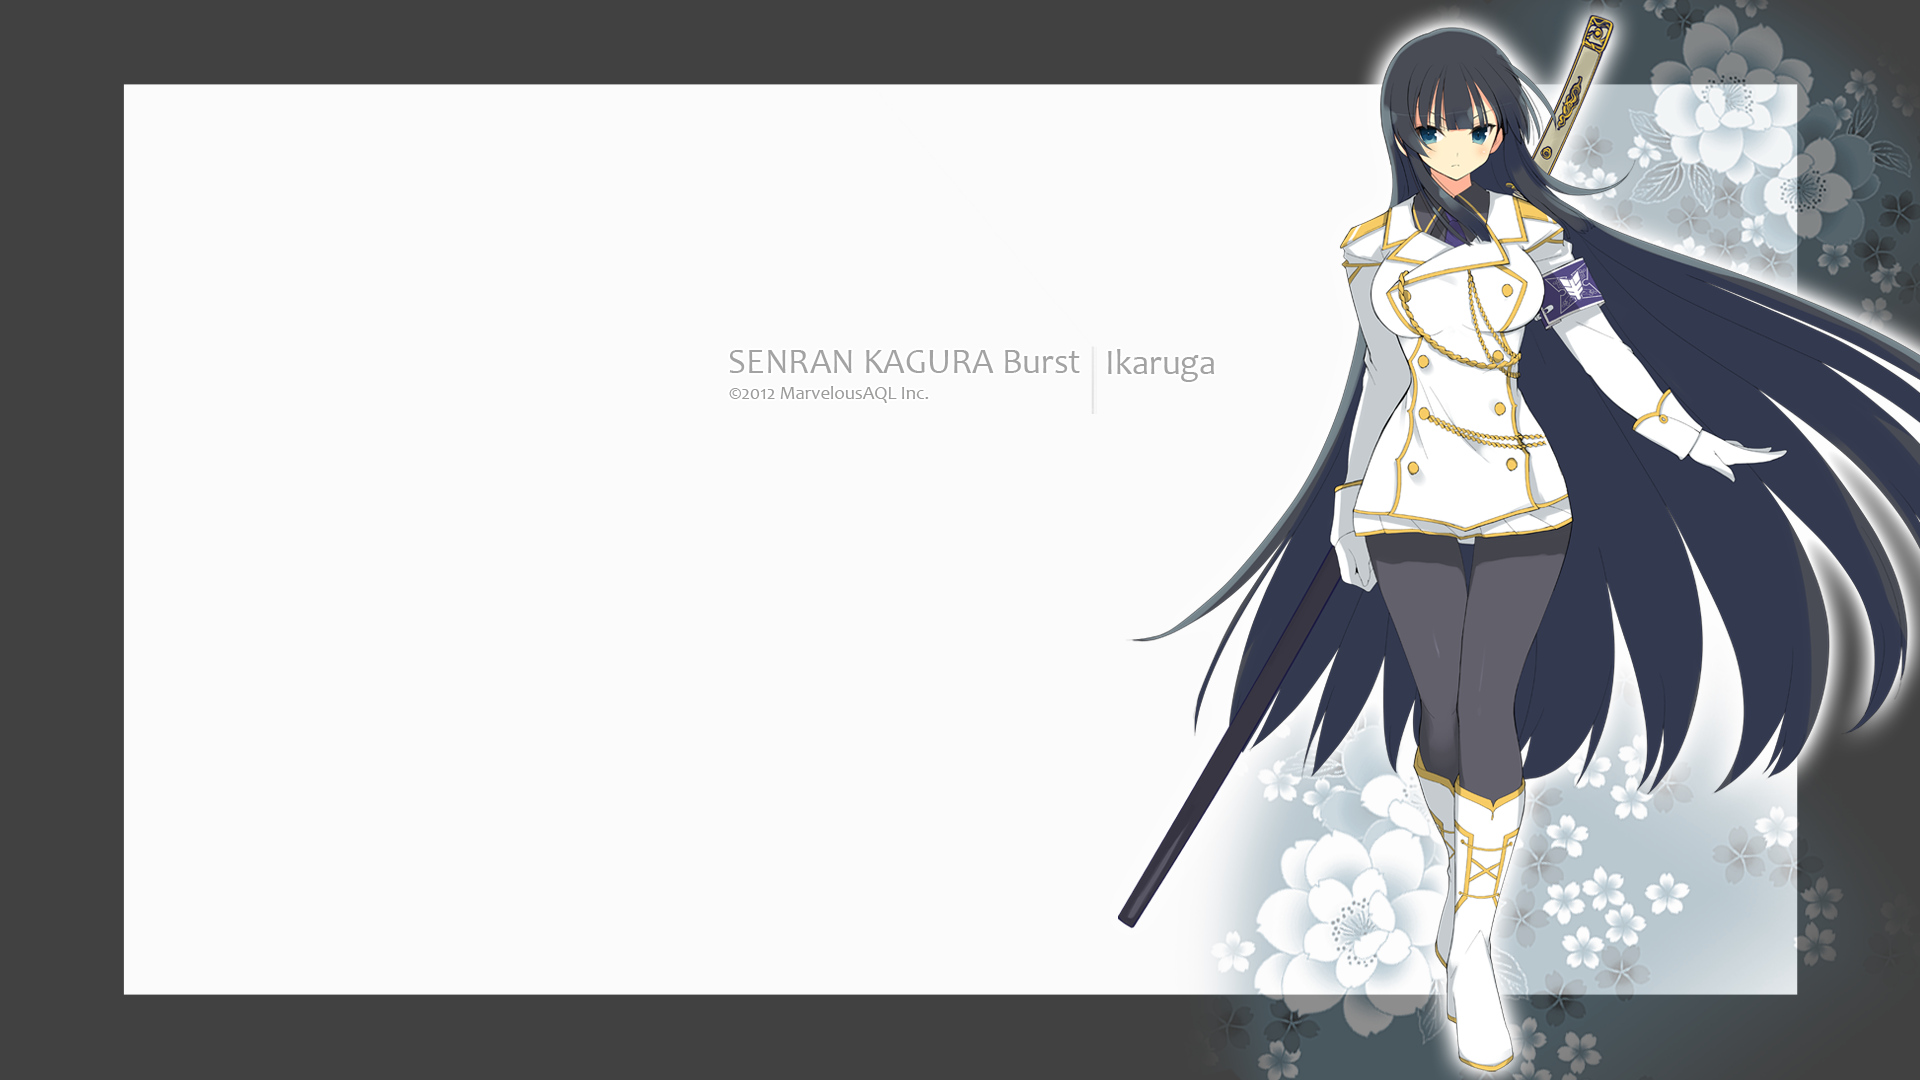 Anime 1920x1080 Ikaruga military uniform Senran Kagura anime girls dark hair long hair Yaegashi Nan artwork